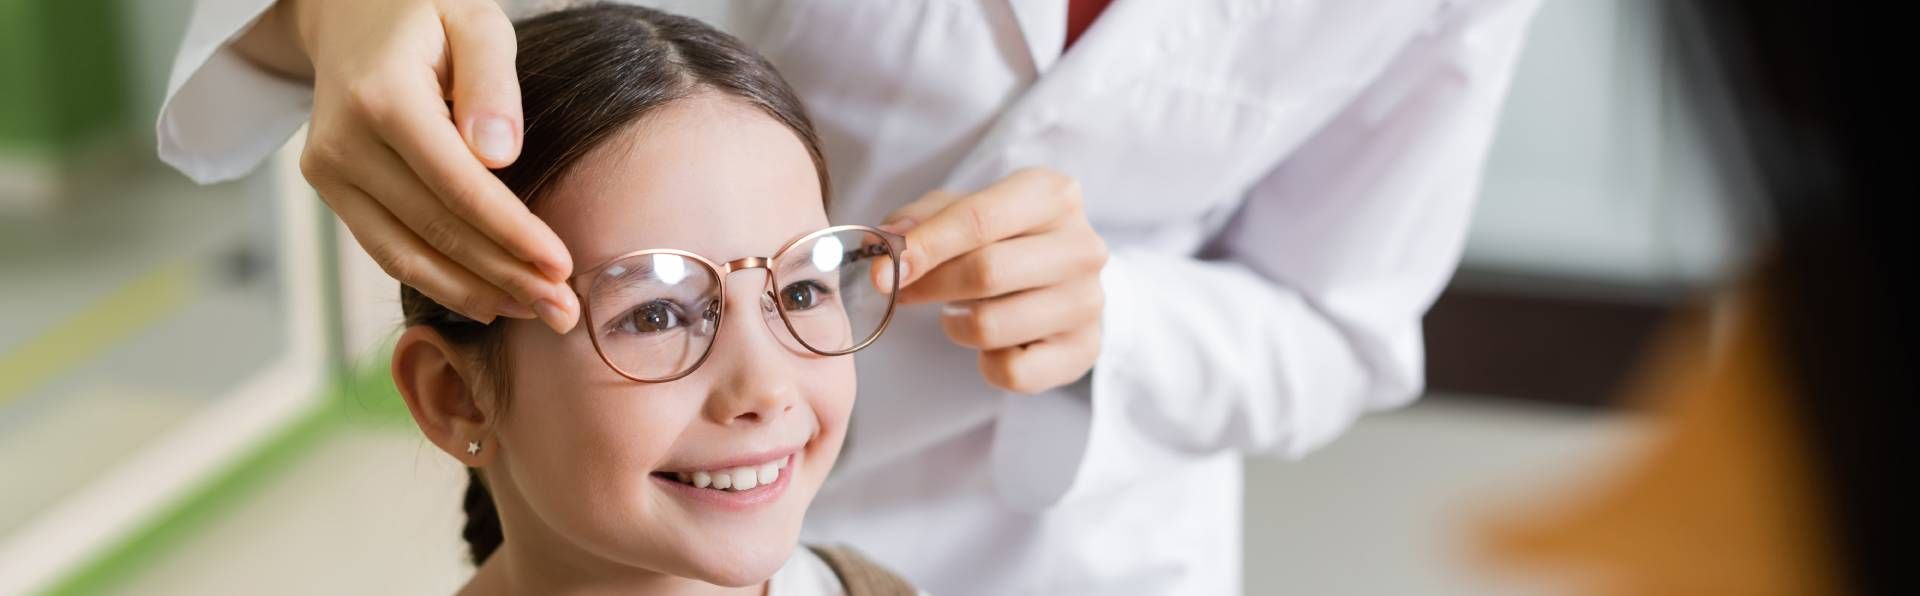 Ein kleines Mädchen lächelt , während ein Arzt ihr eine Brille anzieht